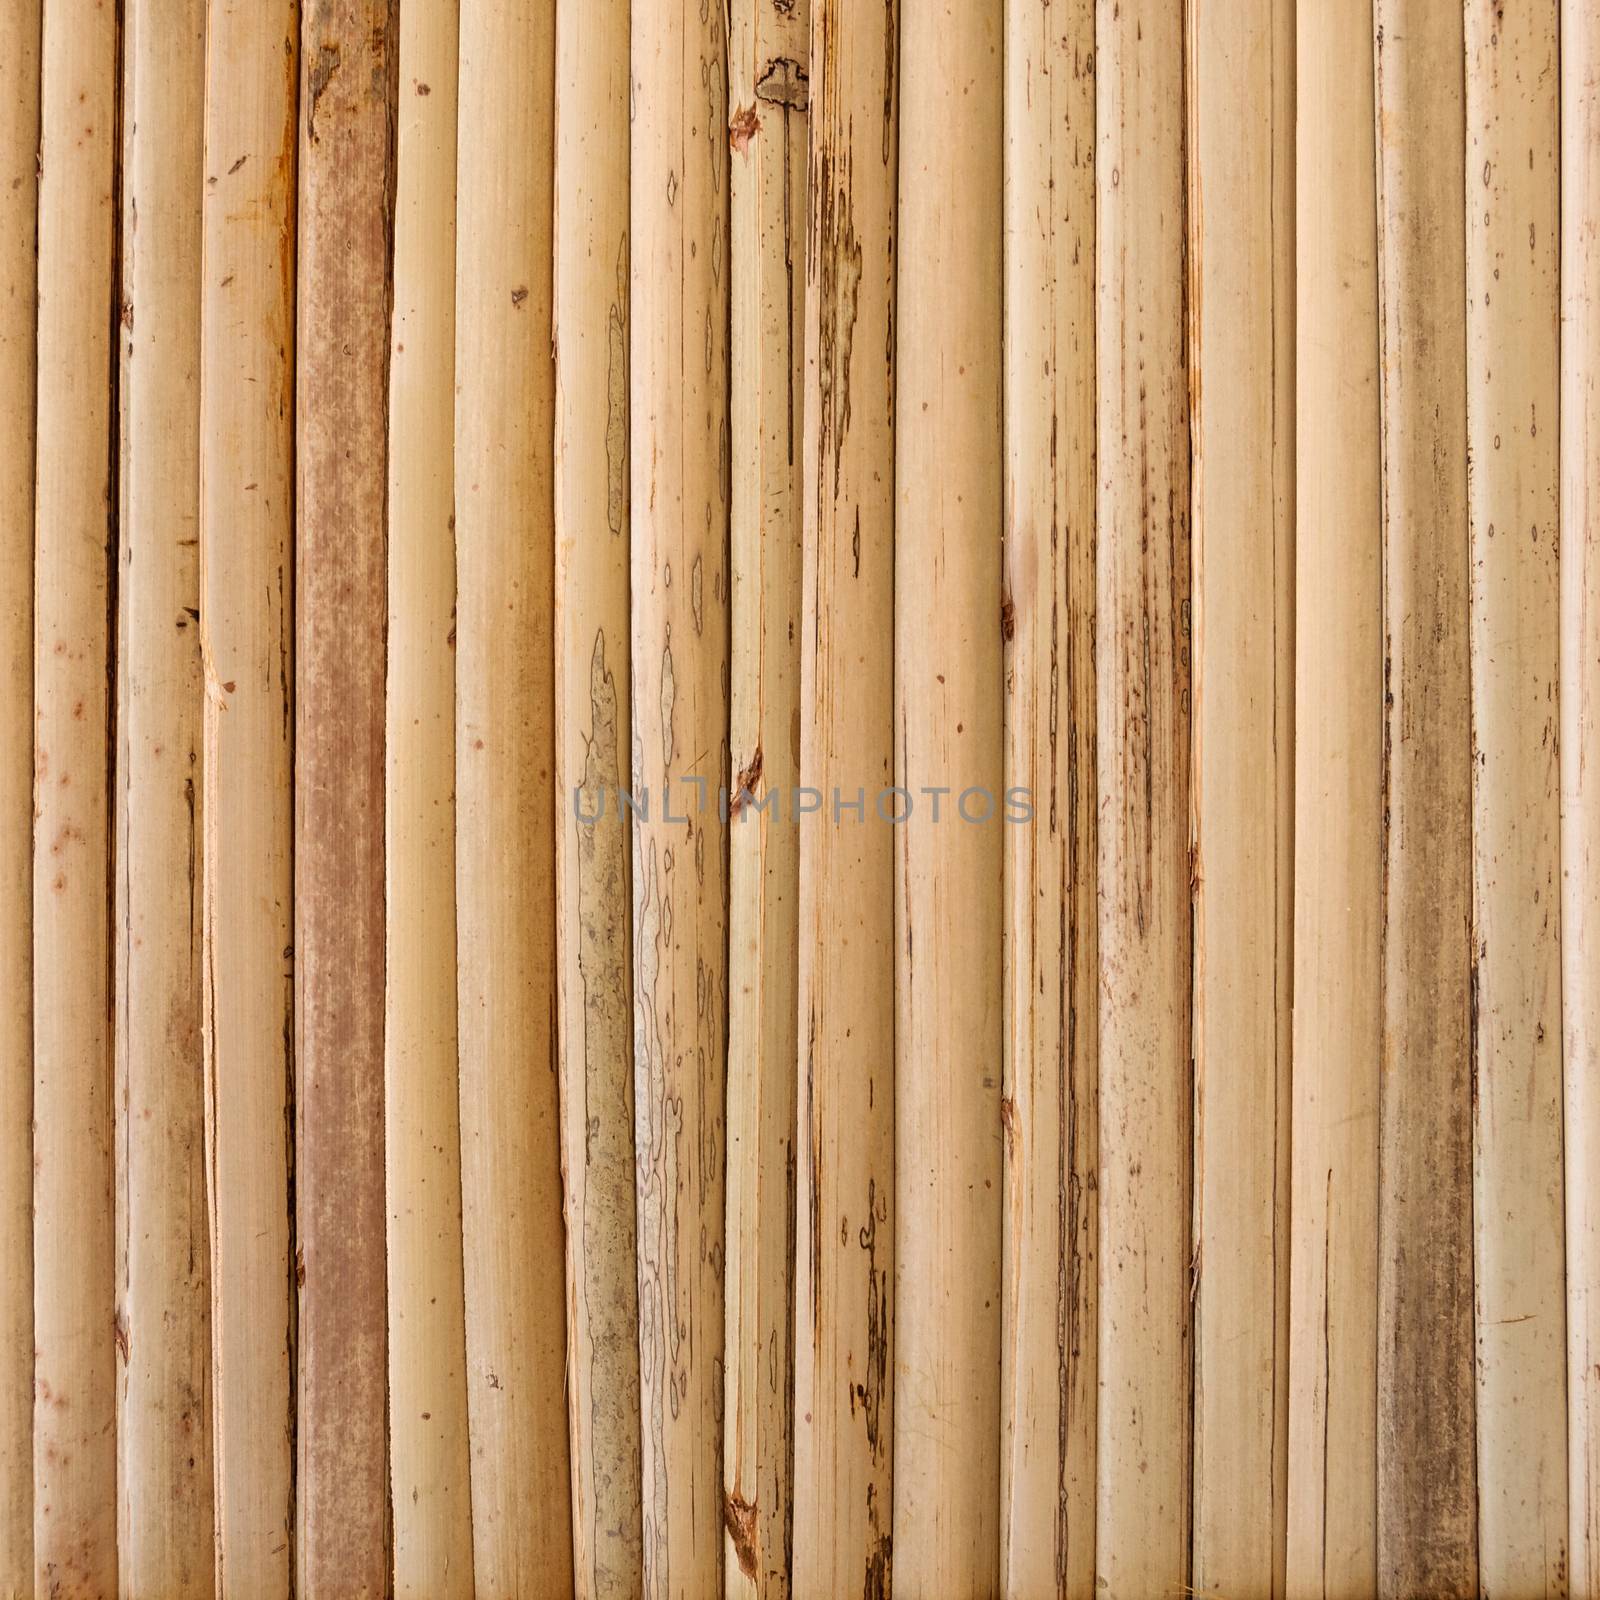 Wood texture by dutourdumonde